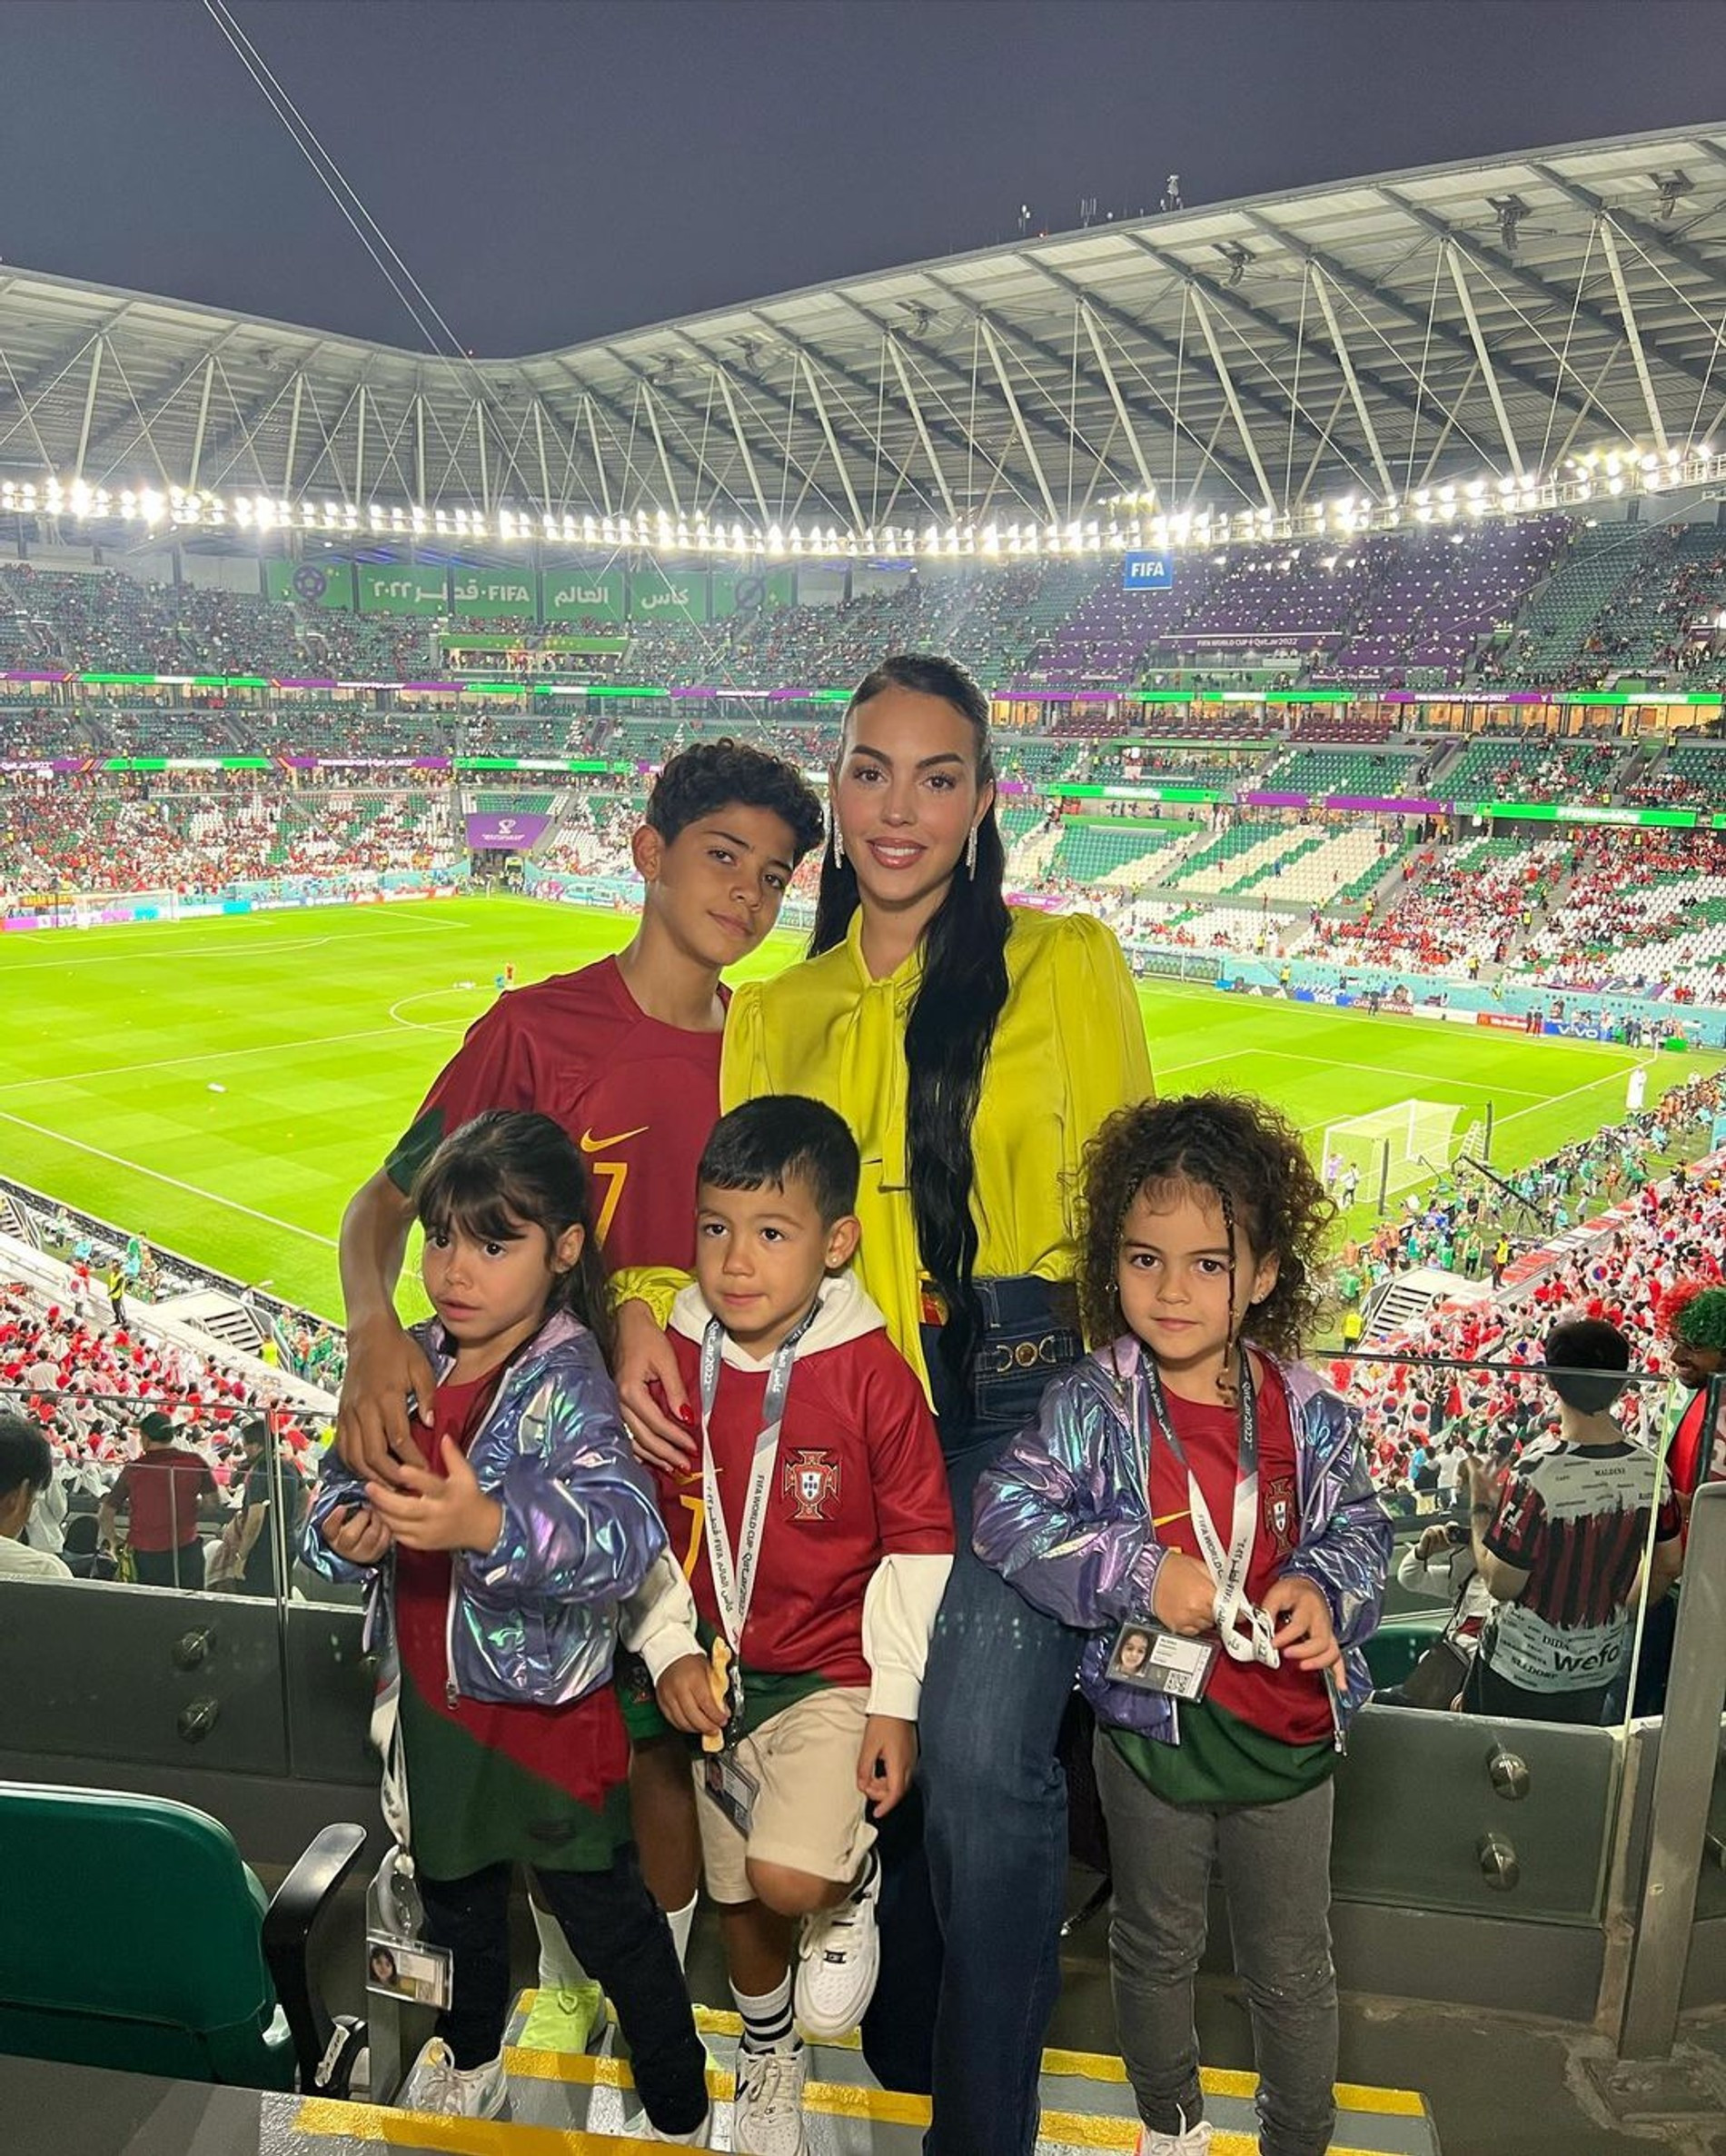 Джорджина Родригес с детьми Роналду в Катаре
Фото: Инстаграм